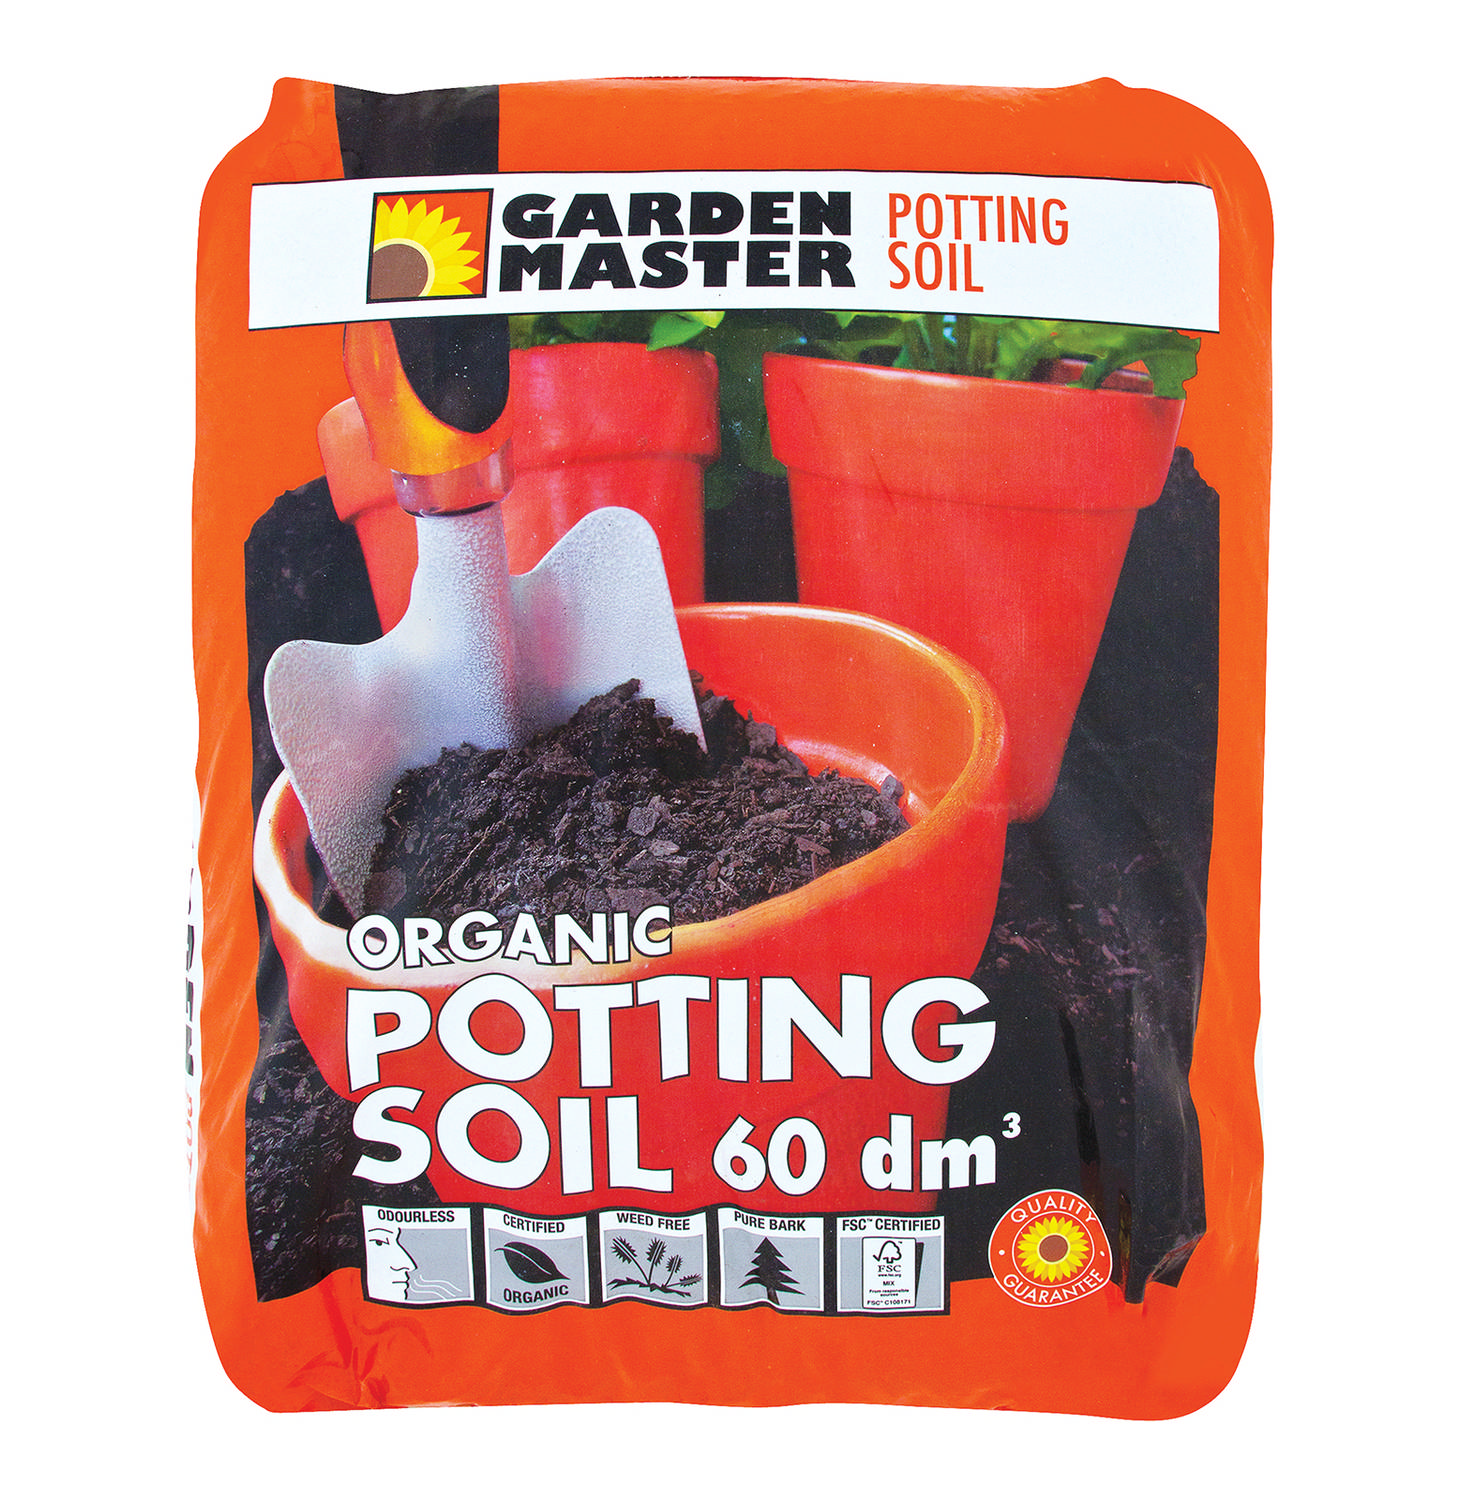 Garden Master Potting Soil 60 dm